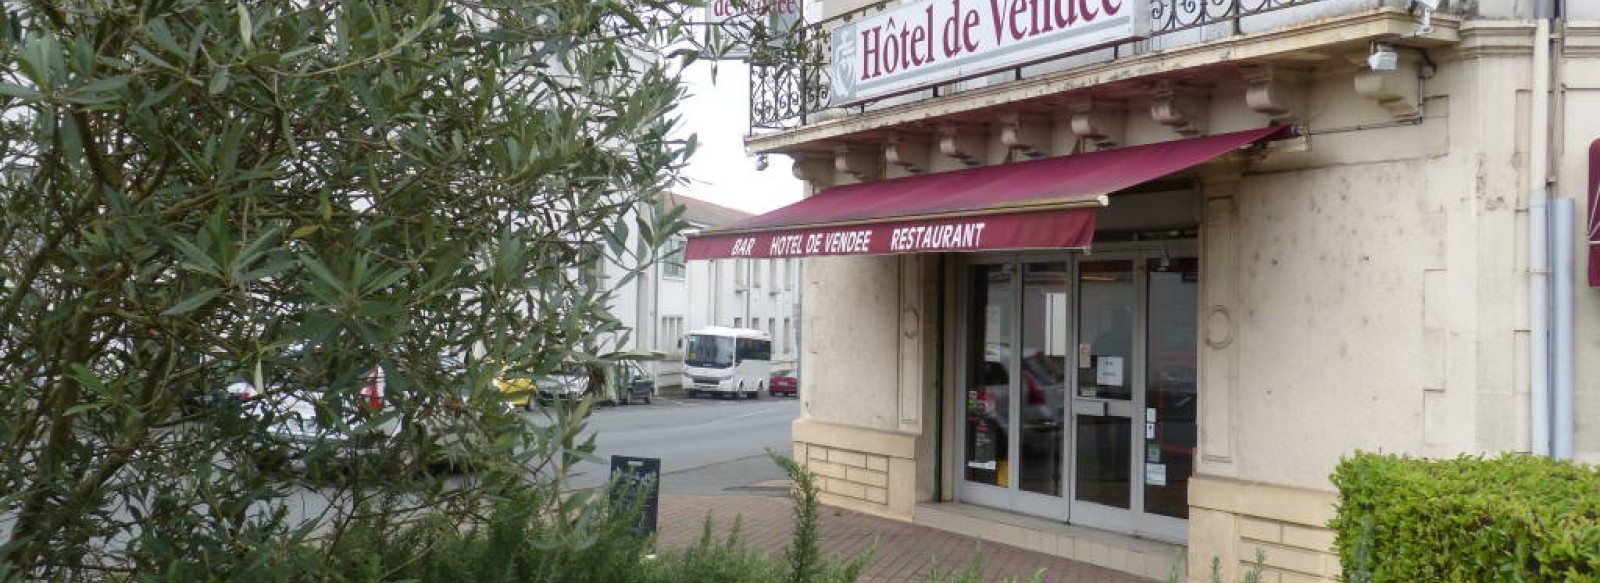 HOTEL-RESTAURANT DE VENDEE